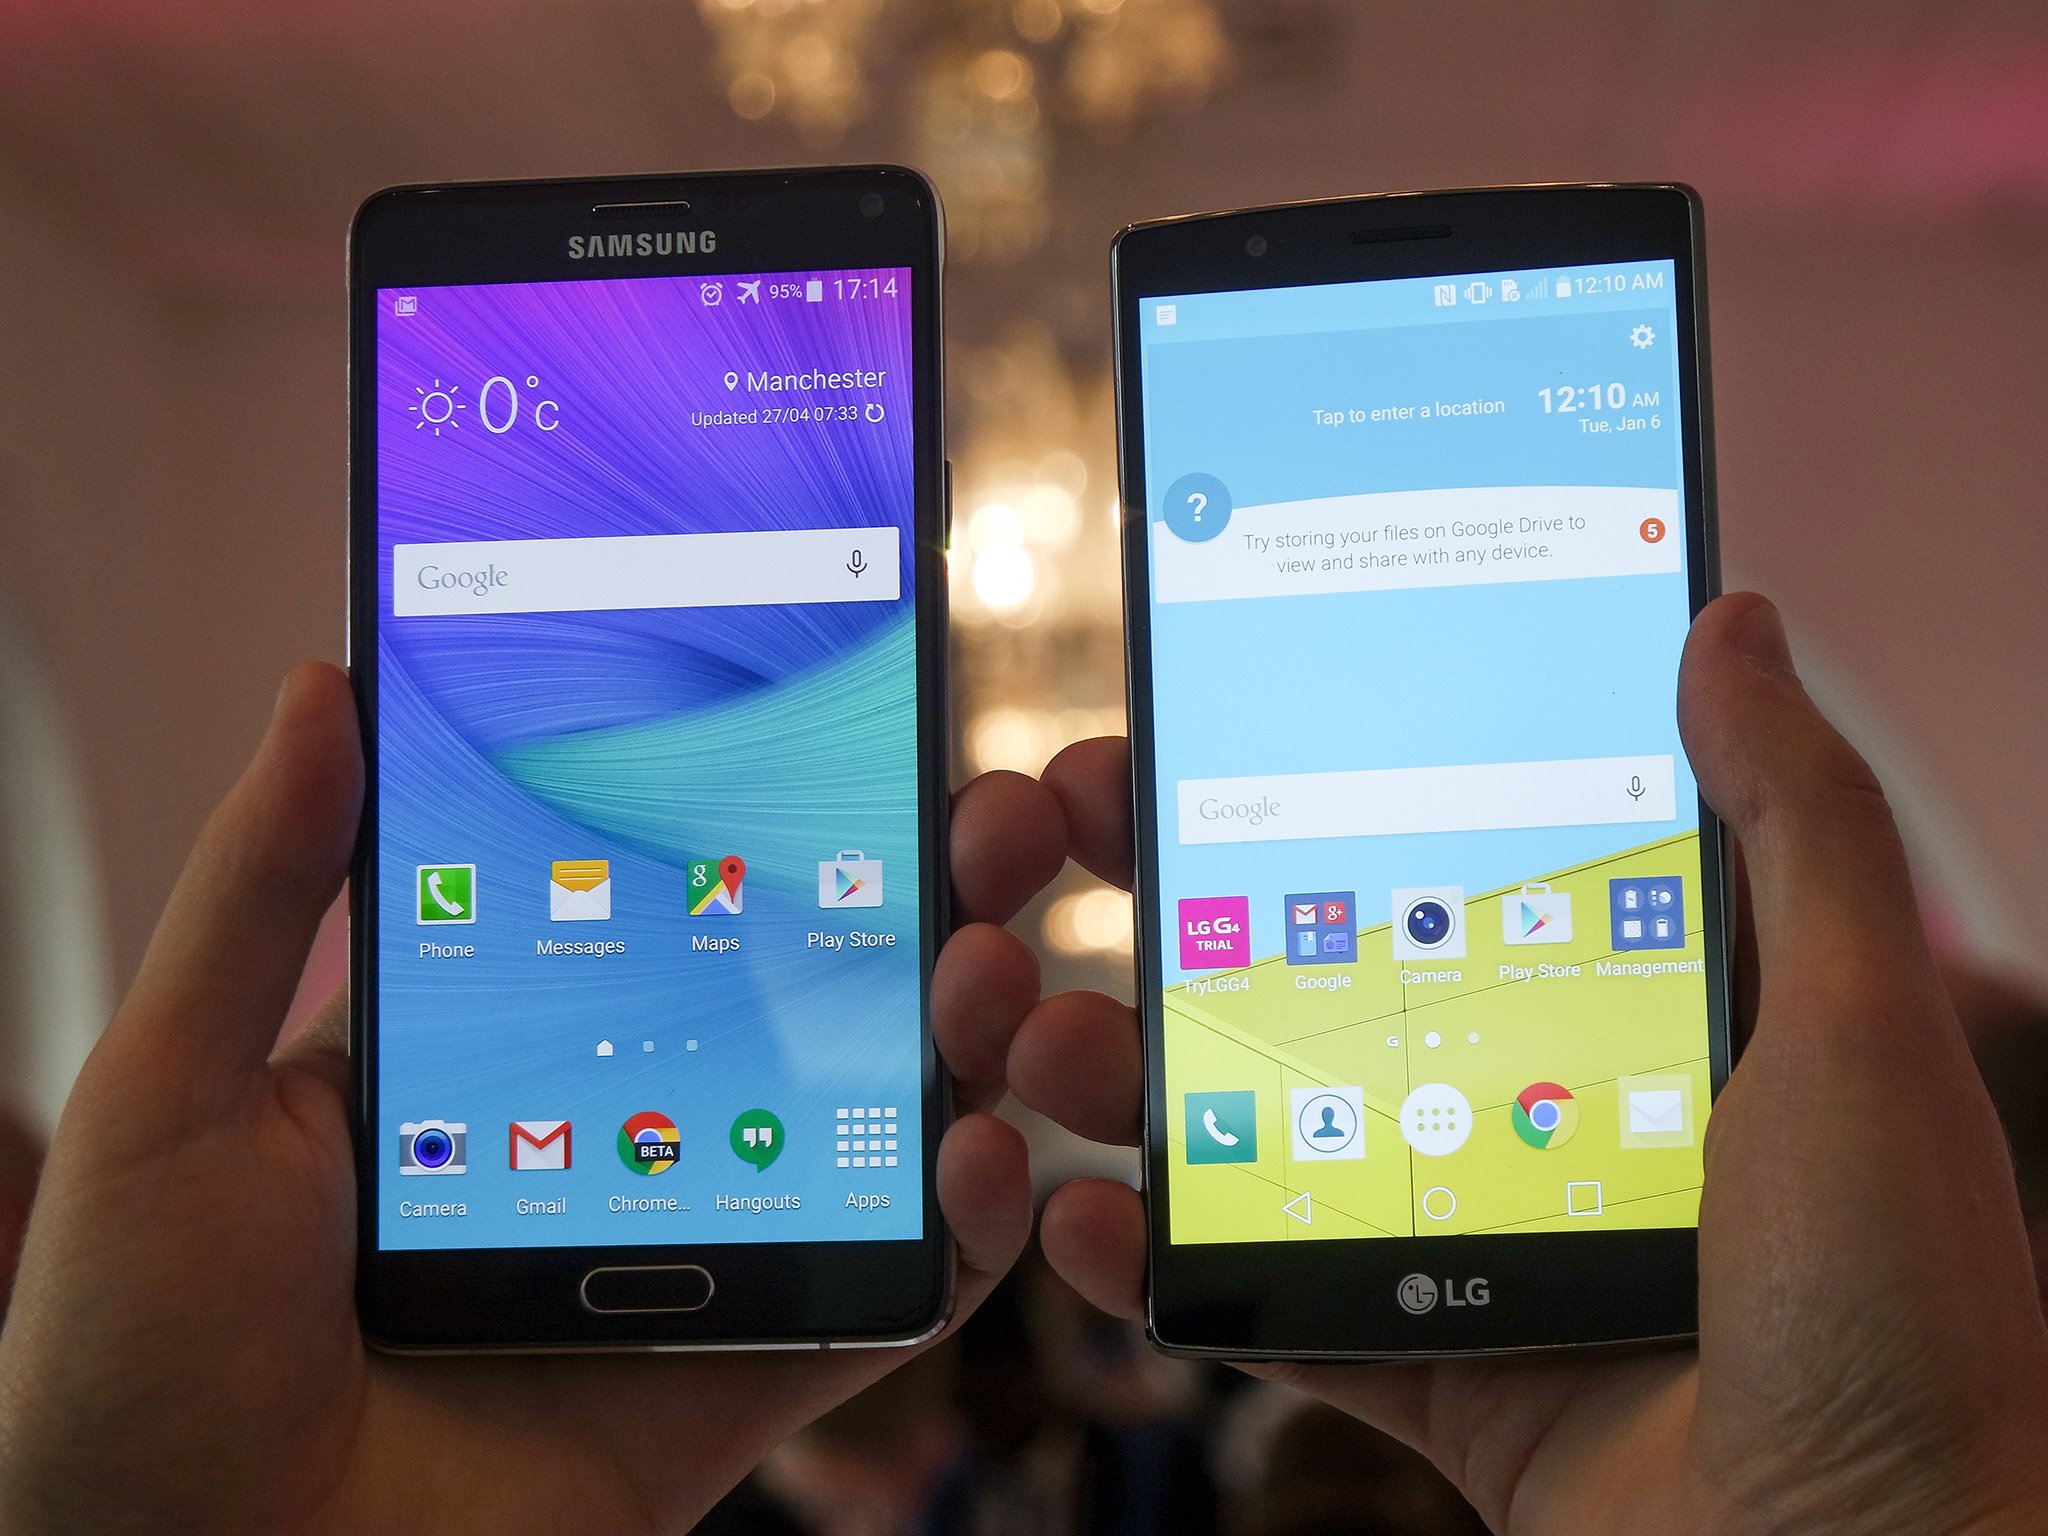 LG G4 versus Samsung Galaxy Note 4